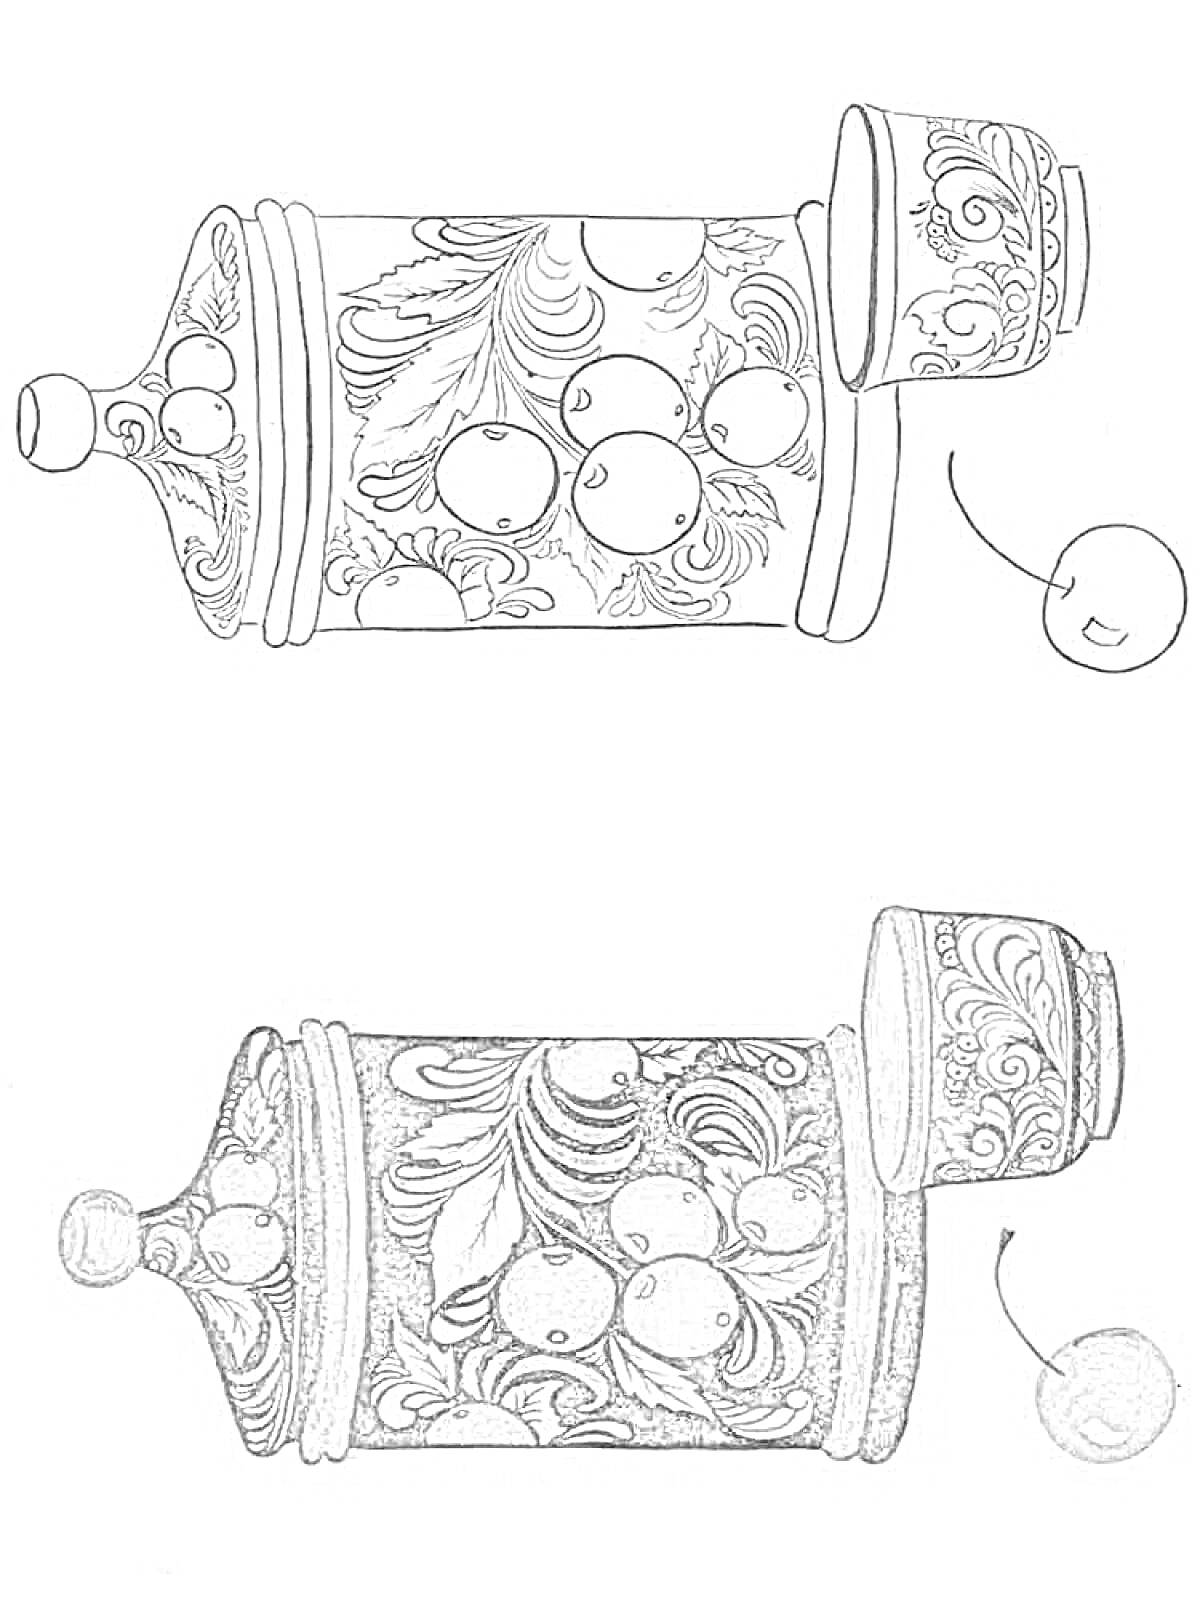 Раскраска Роспись хохлома на деревянной банке с крышкой и кружке с изображением ягод и листьев